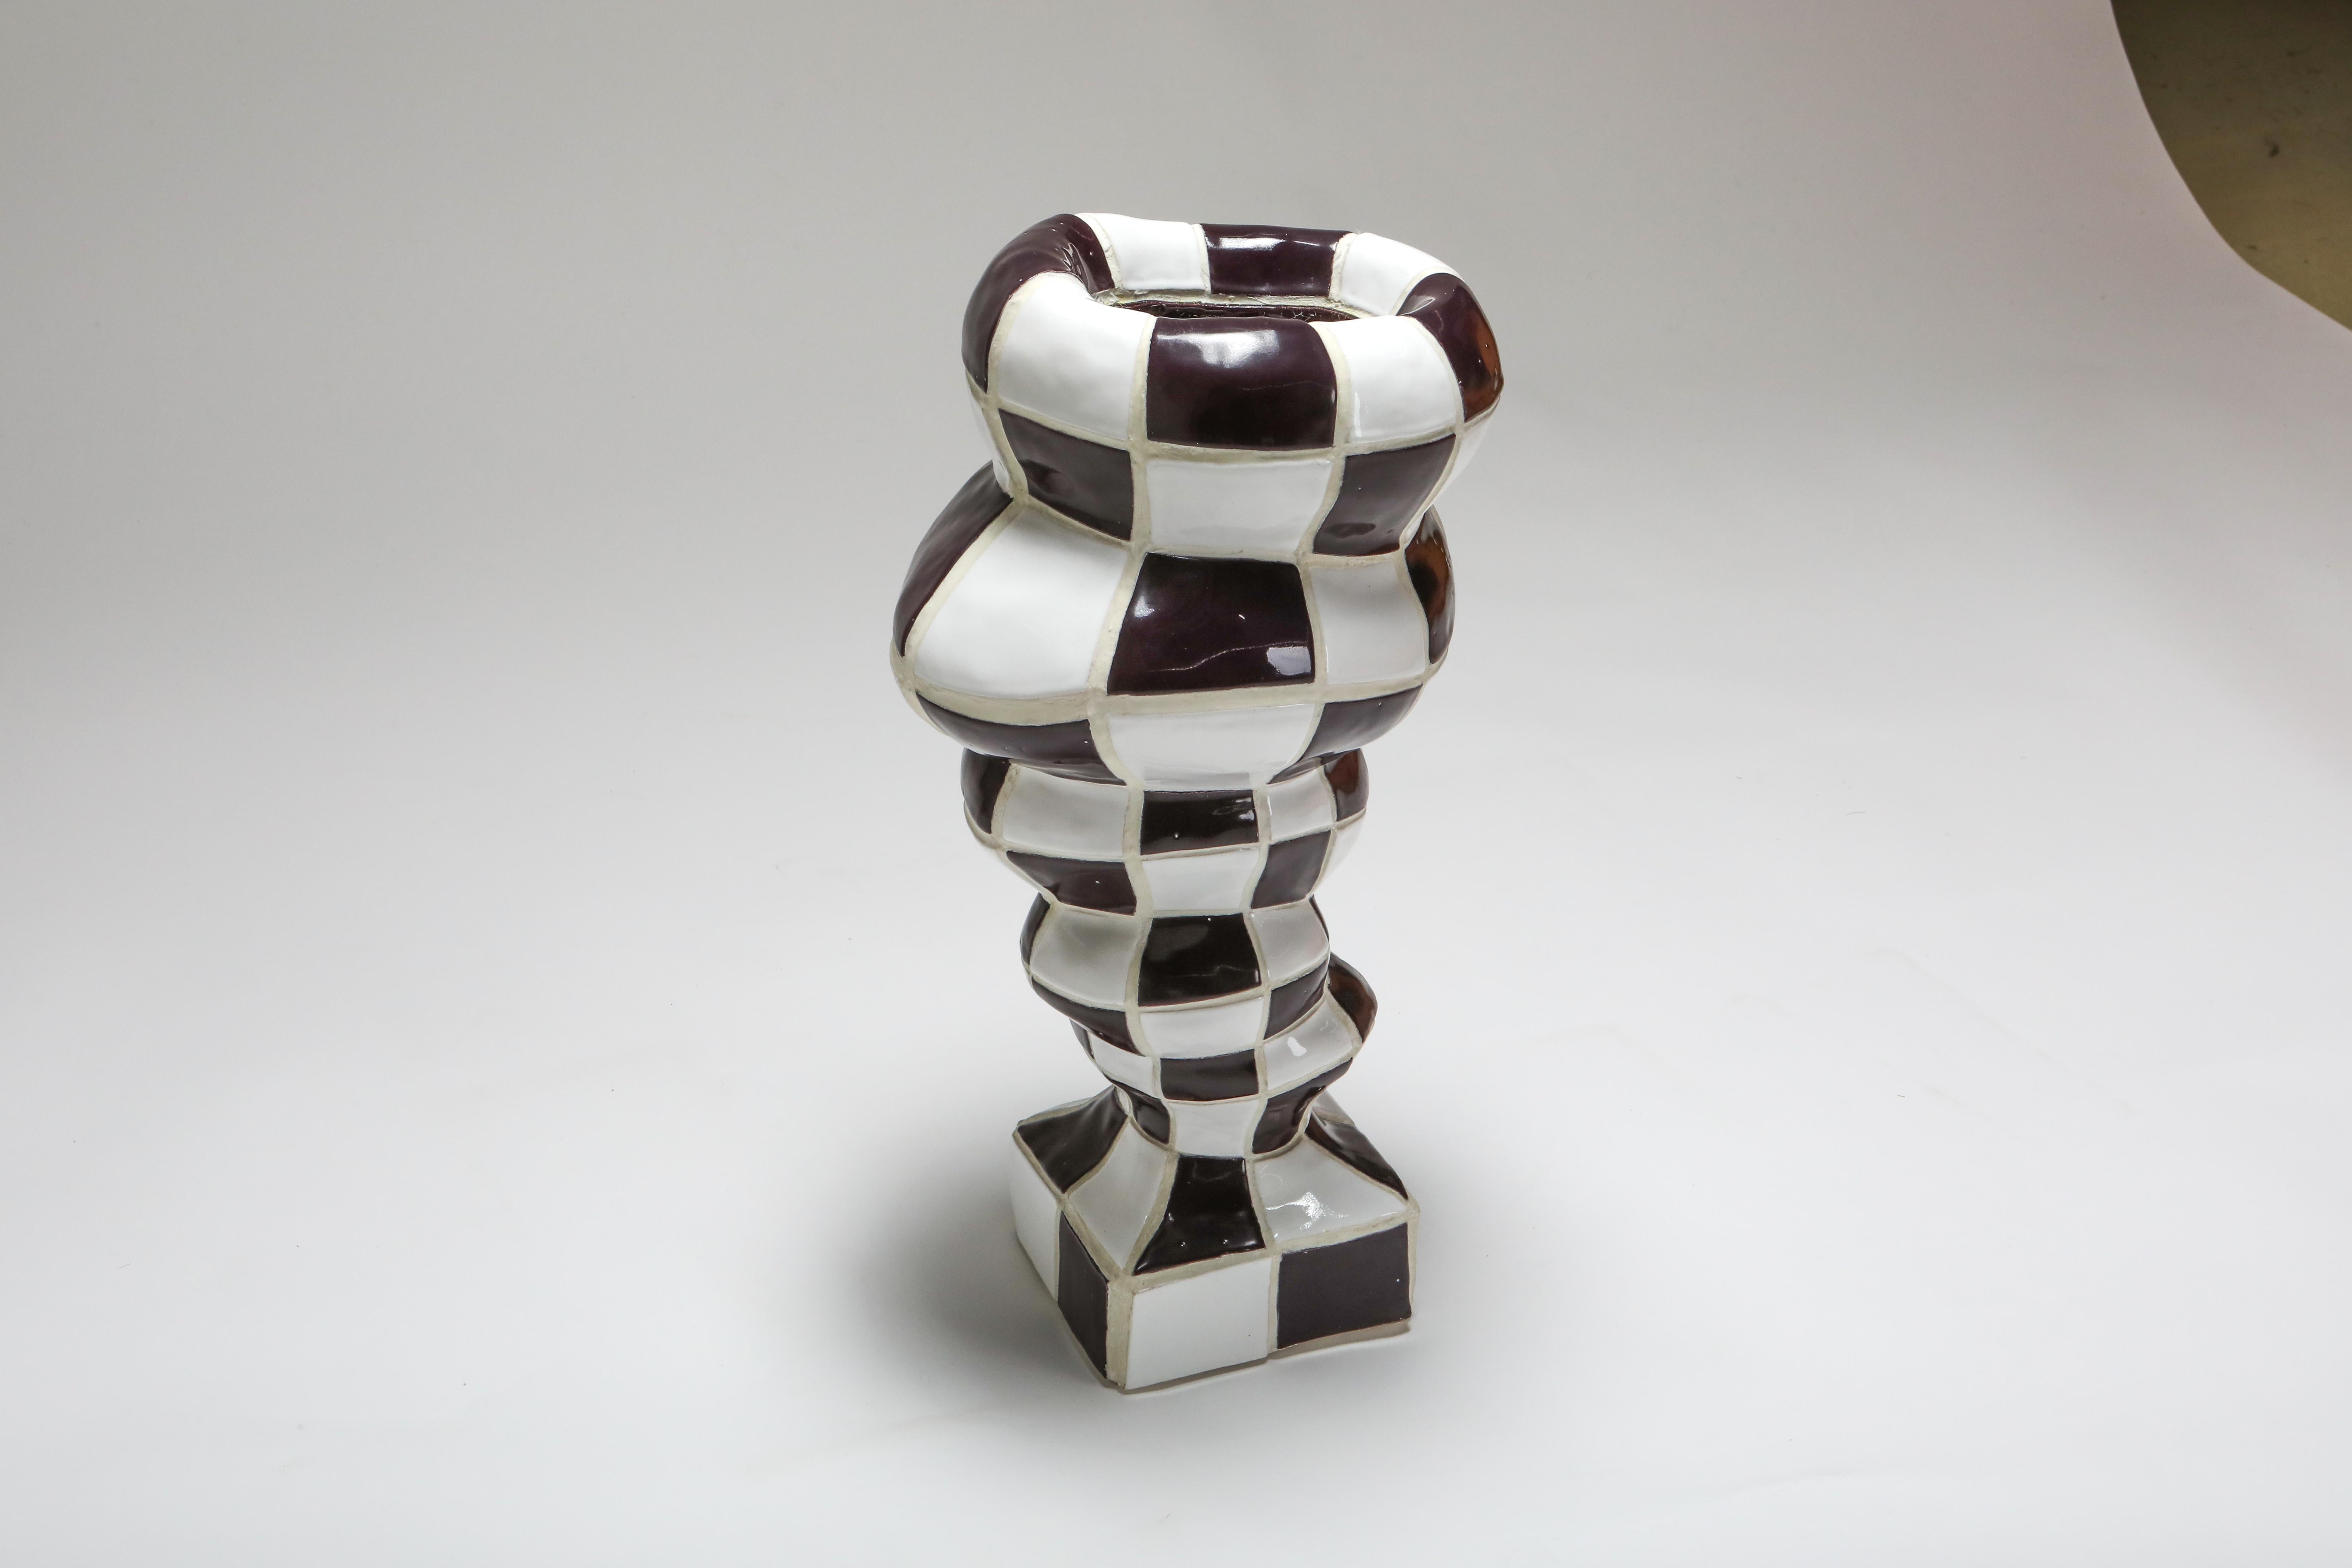 Vase contemporain, touche-touche, France, 2020.

Pothole portal vex est un objet d'art fonctionnel contemporain créé par le duo touche-touche. Cet objet unique faisait partie de l'exposition solo de la galerie Everyday intitulée 